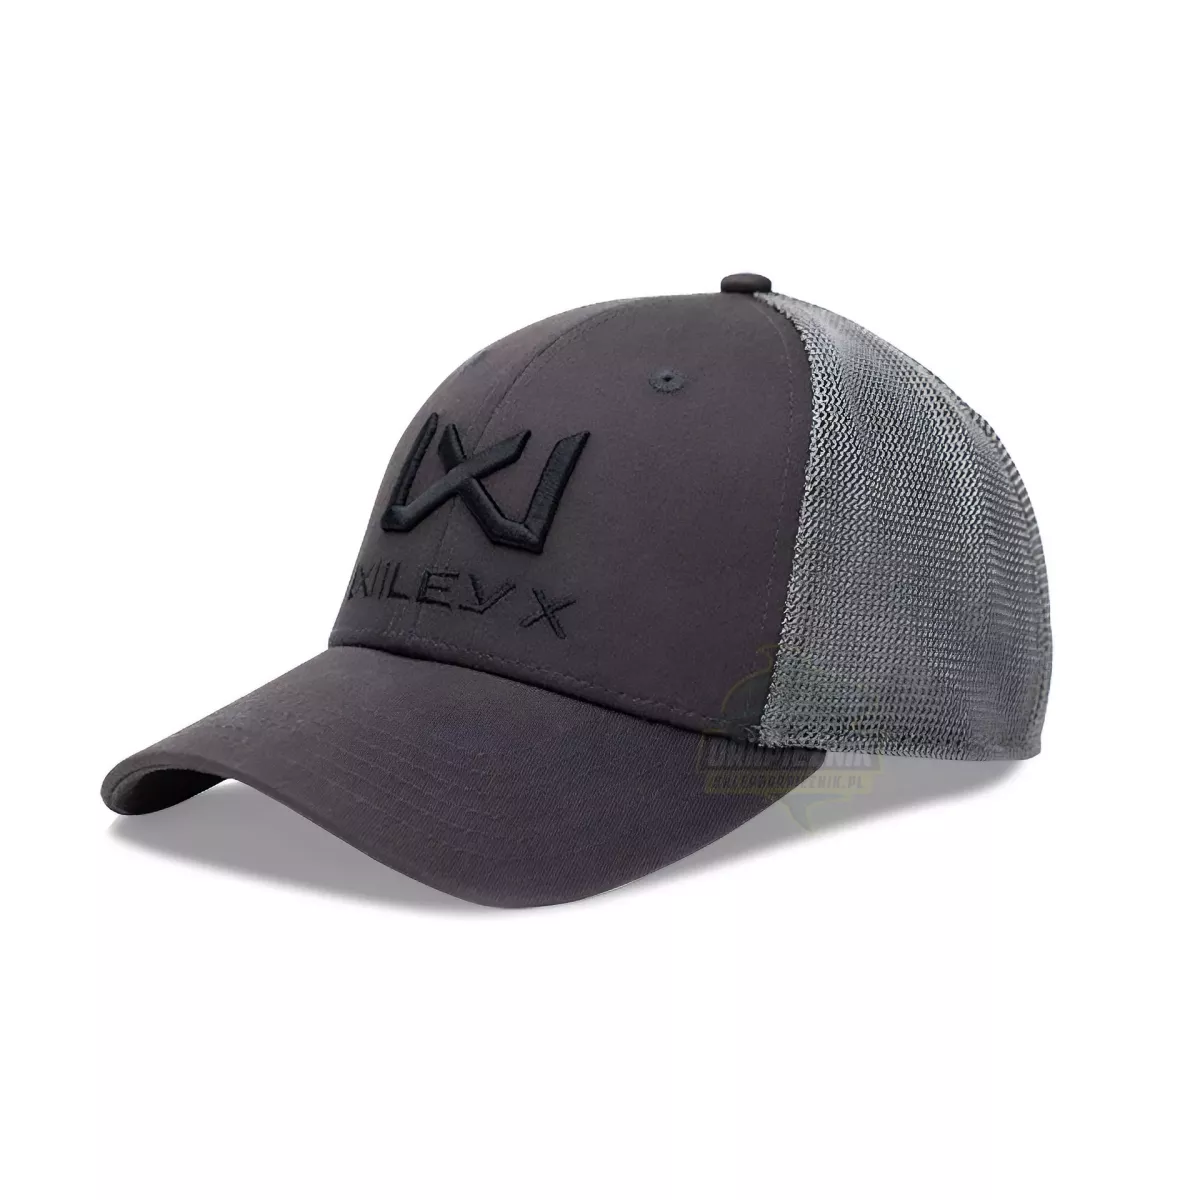 Czapka Wiley X Cap J906 - Dark Grey / Black WX Logo